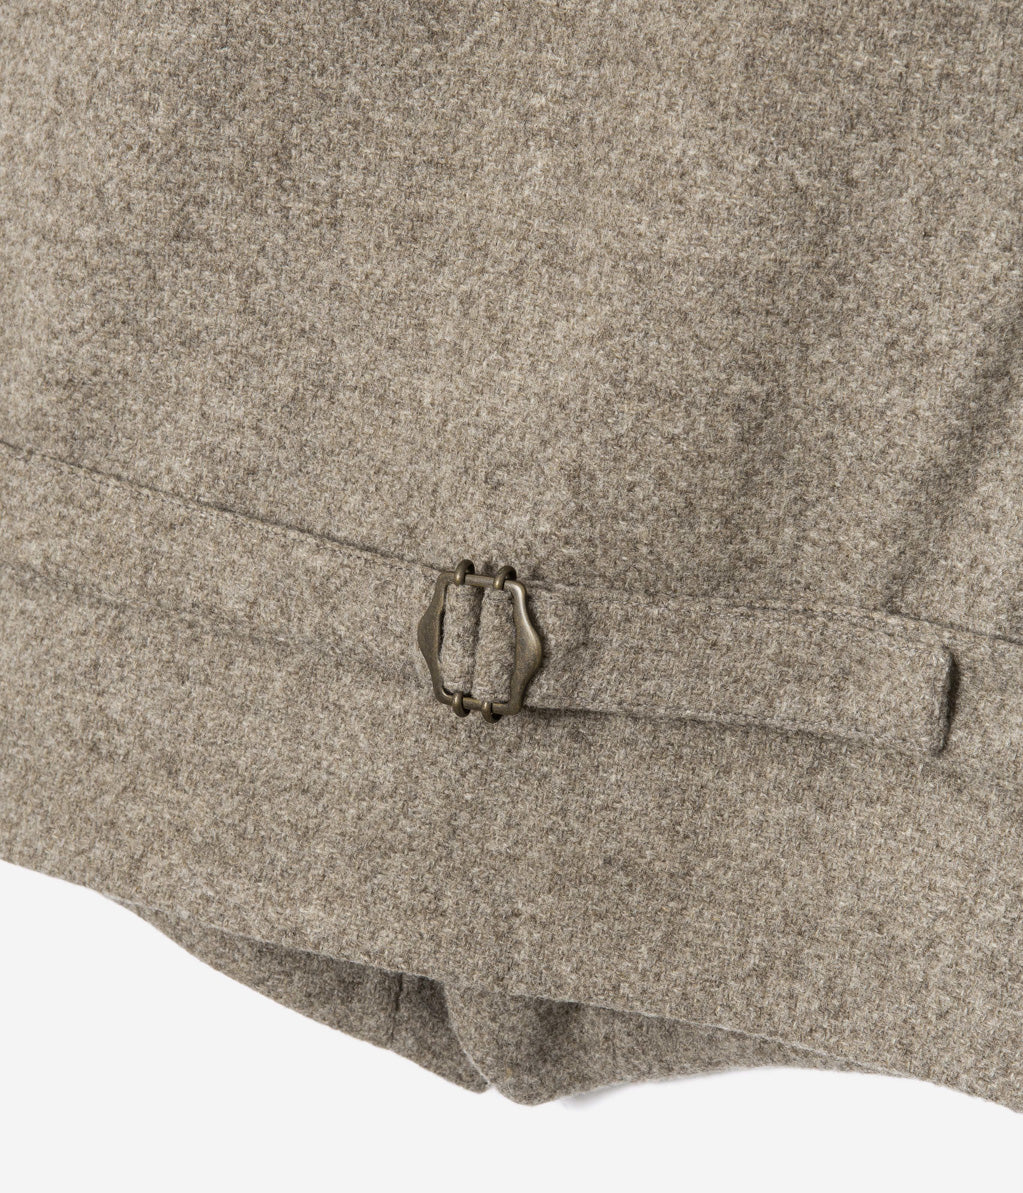 Tonton et Fils - Le veston homme «Auguste» laine naturelle écrue - Fabriqué en France - Vue sur les pattes de réglage